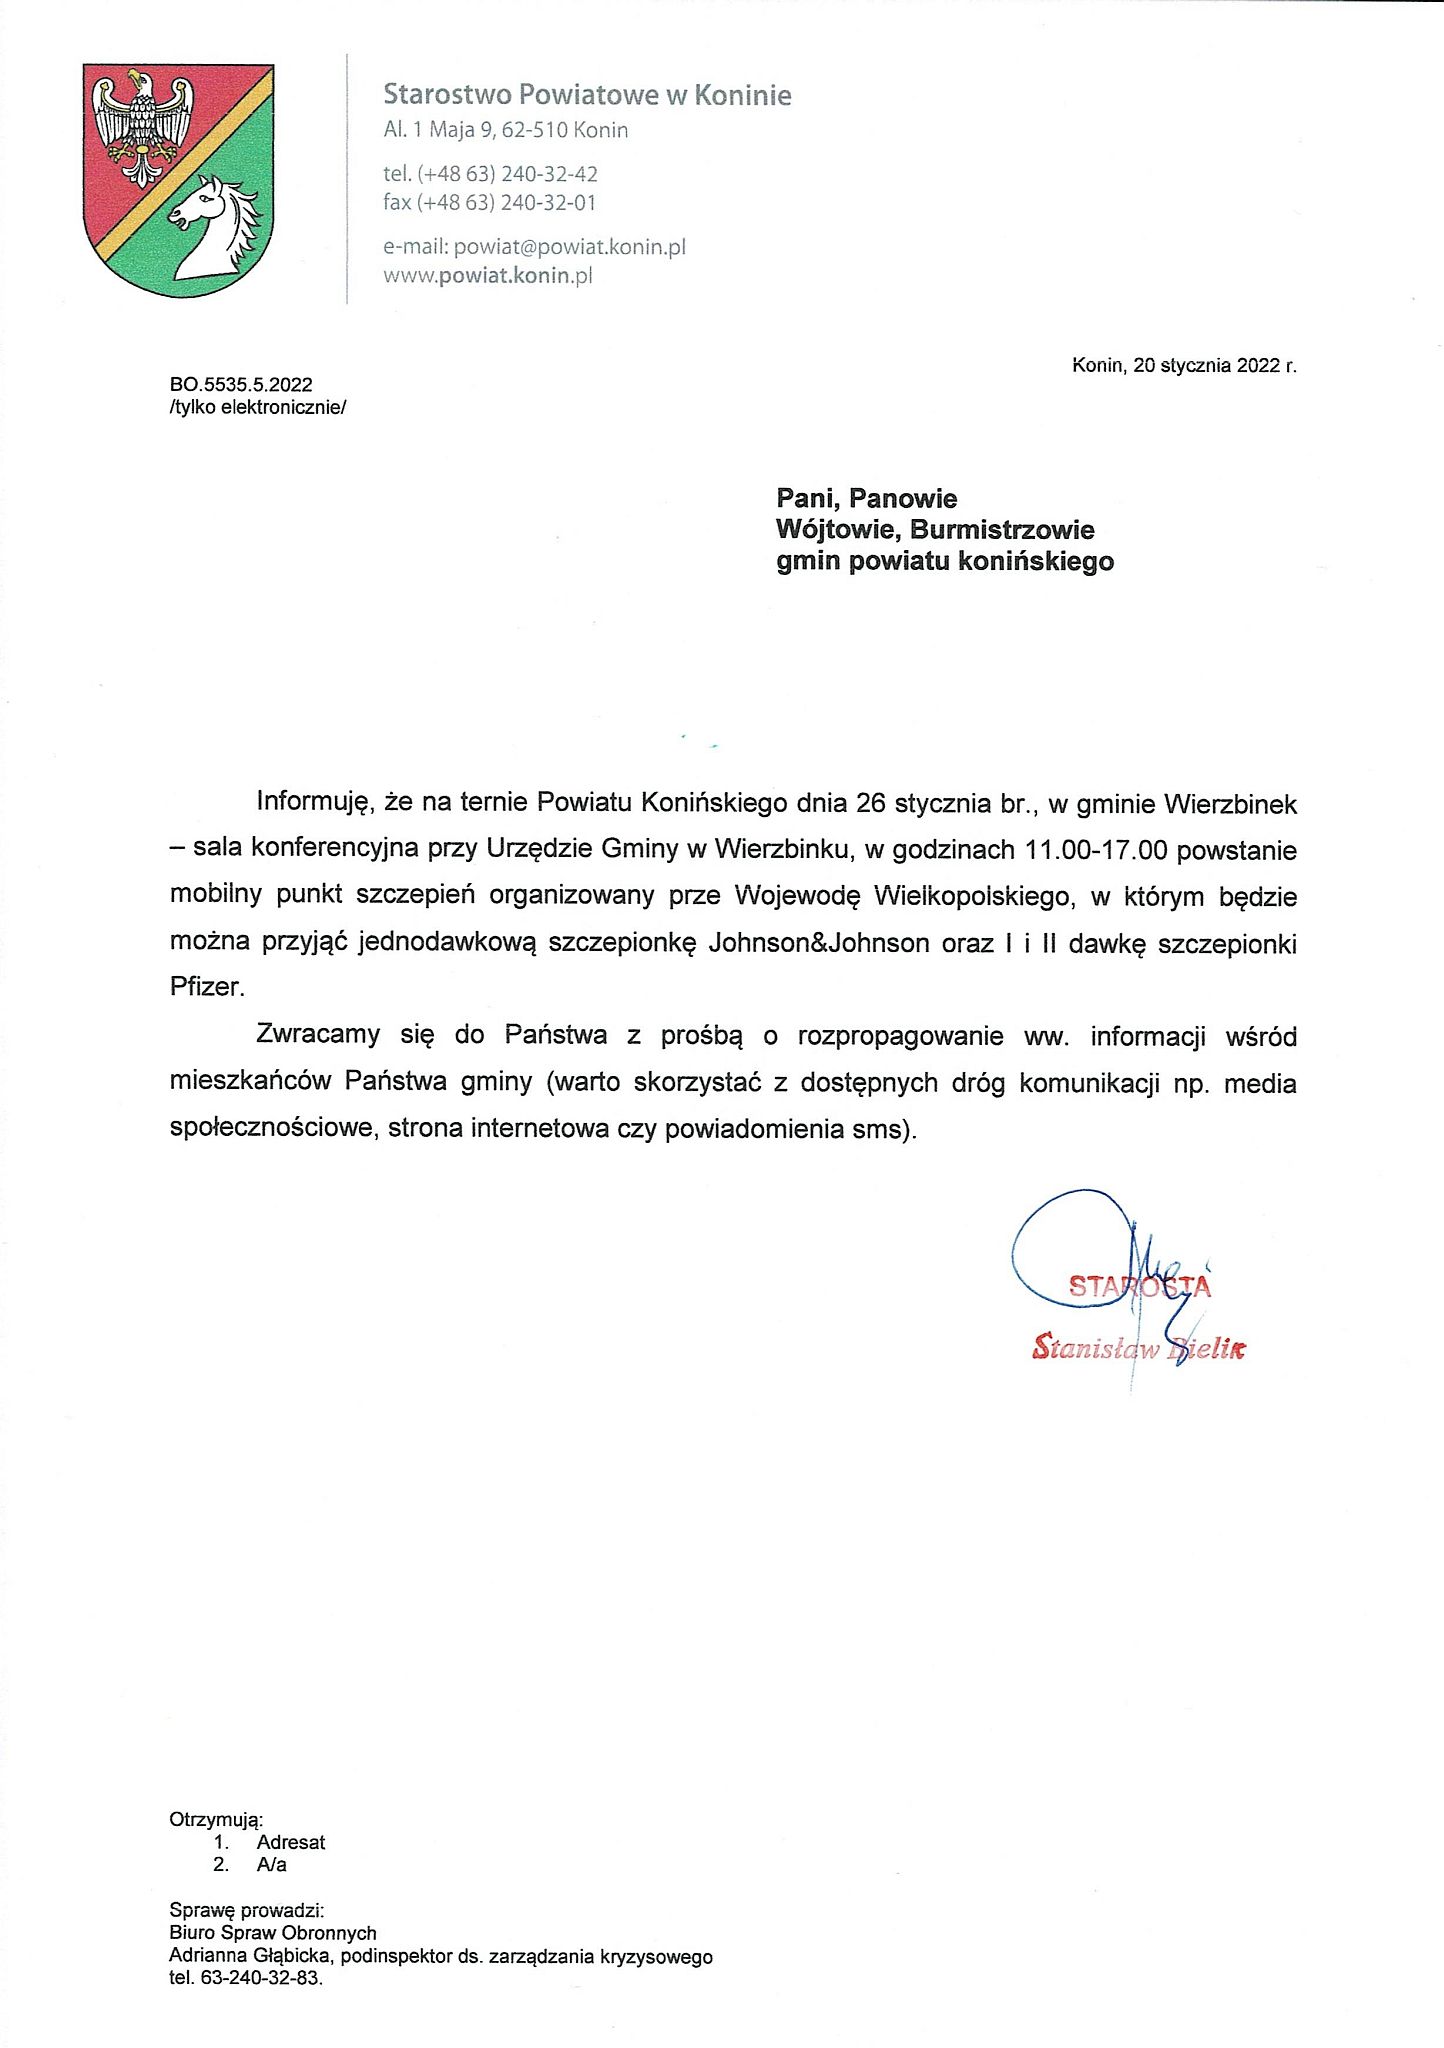 Mobilny punkt szczepień w Wierzbinku - 26.01.2022 r. - plakat